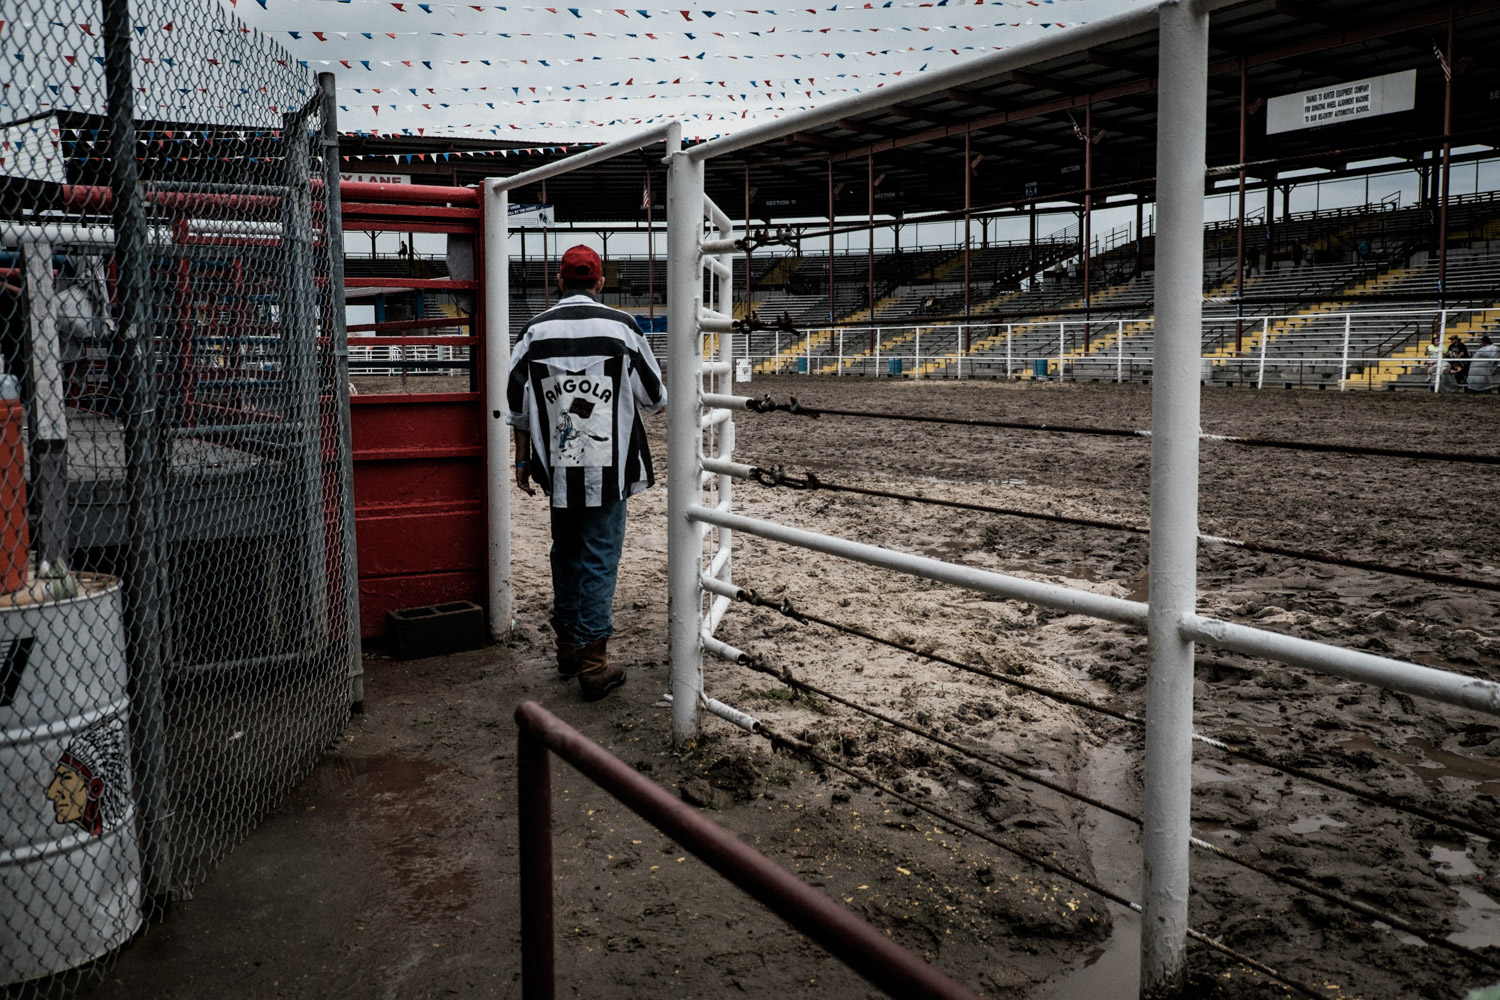 2015 - Rodeo dans la prison d'Angola